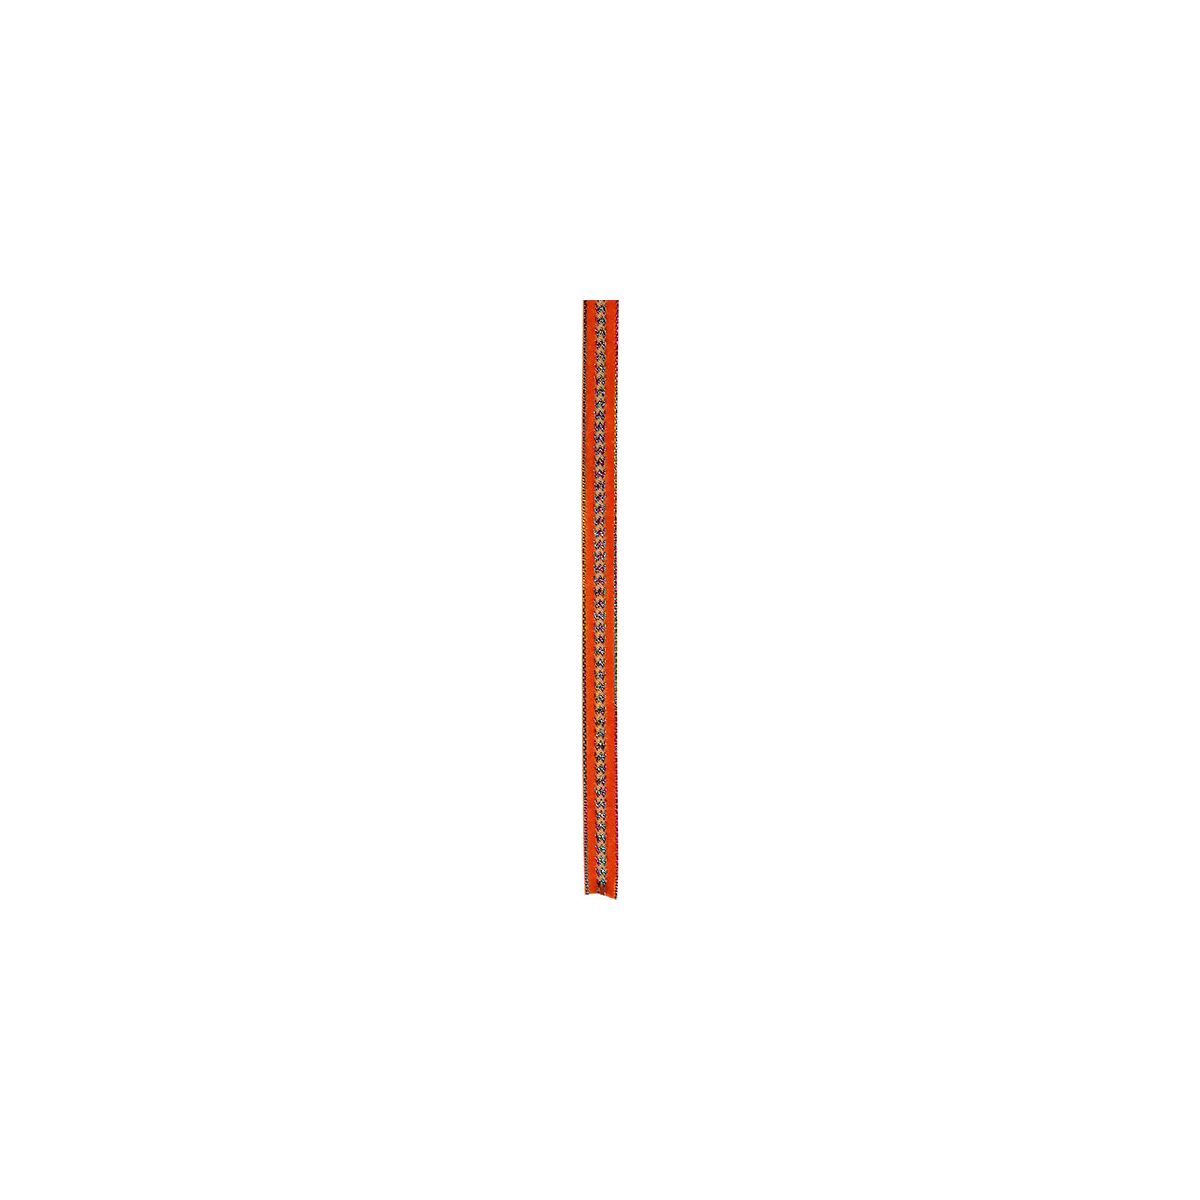 Wstążka Titanum Craft-Fun Series 10mm pomarańczowa 1,5m (TH153024)